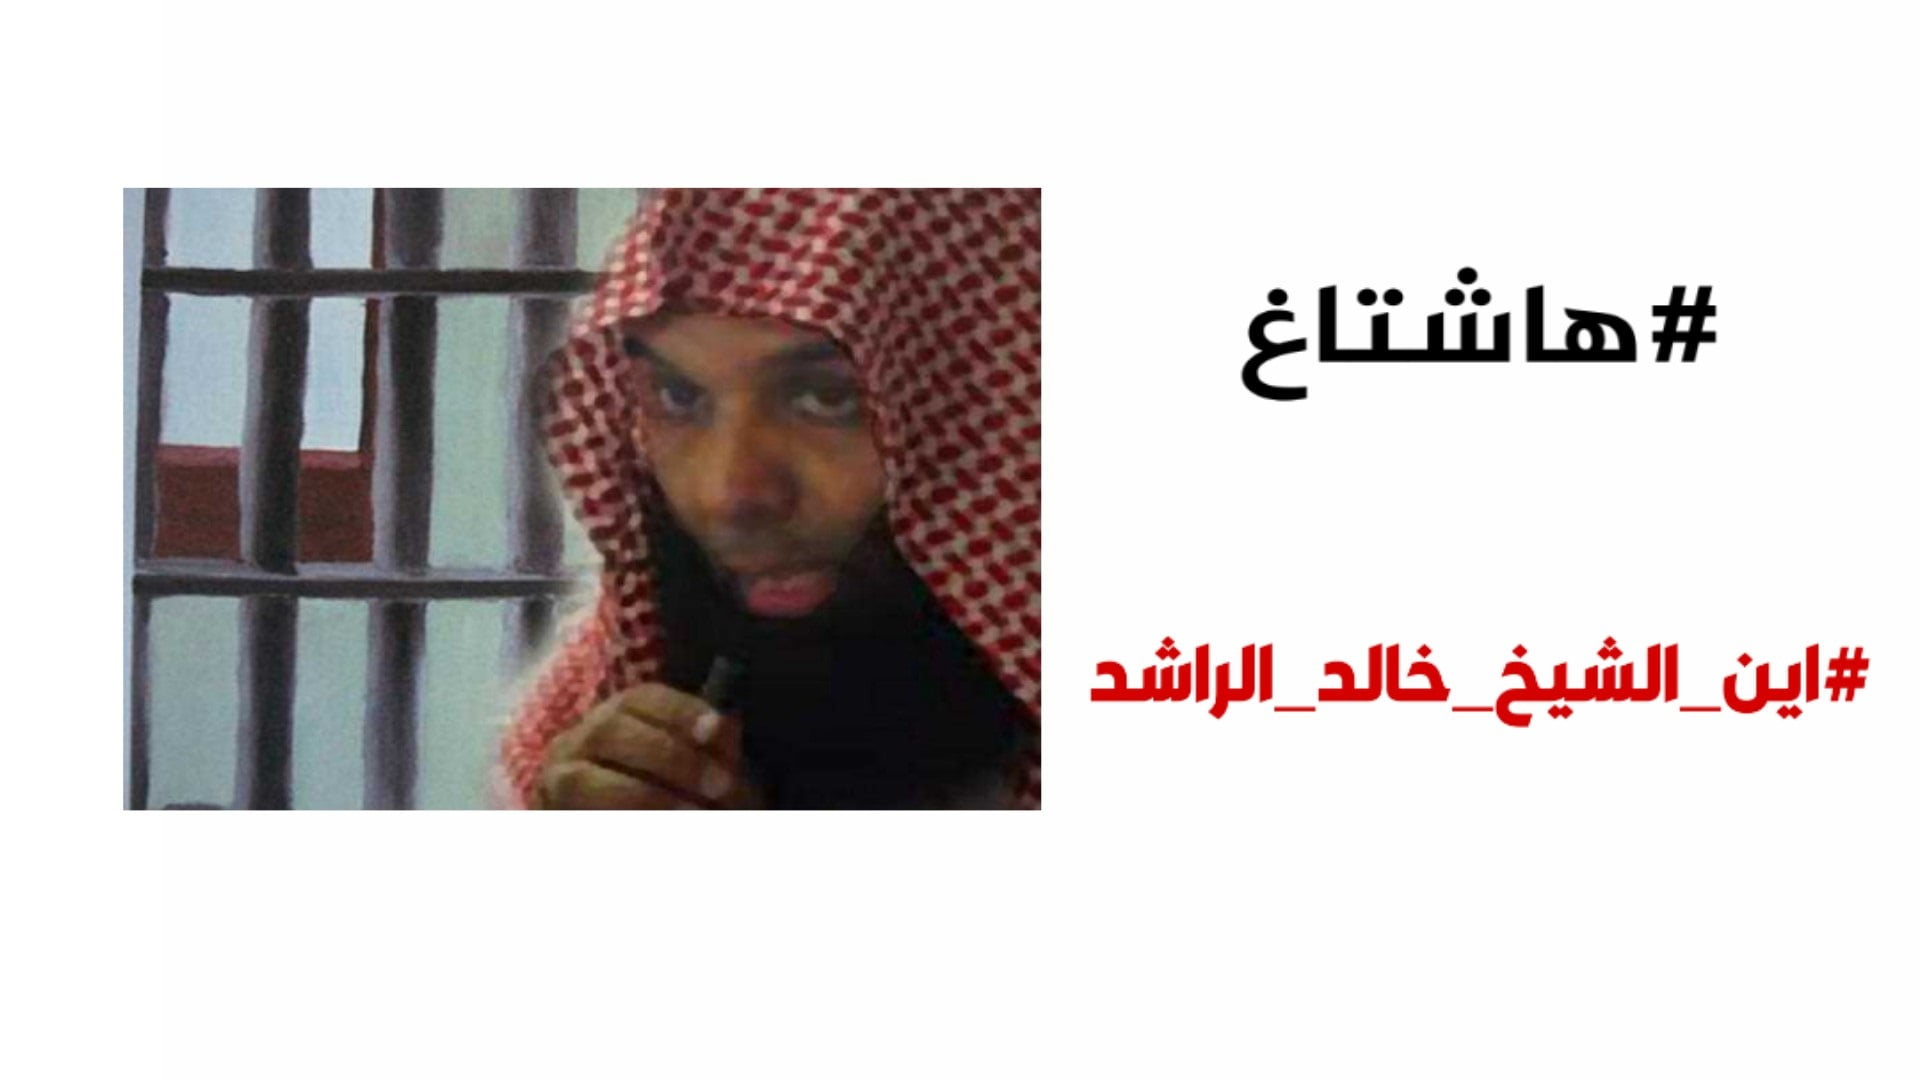 ما هي تهمة الشيخ خالد الراشد وسبب اعتقاله